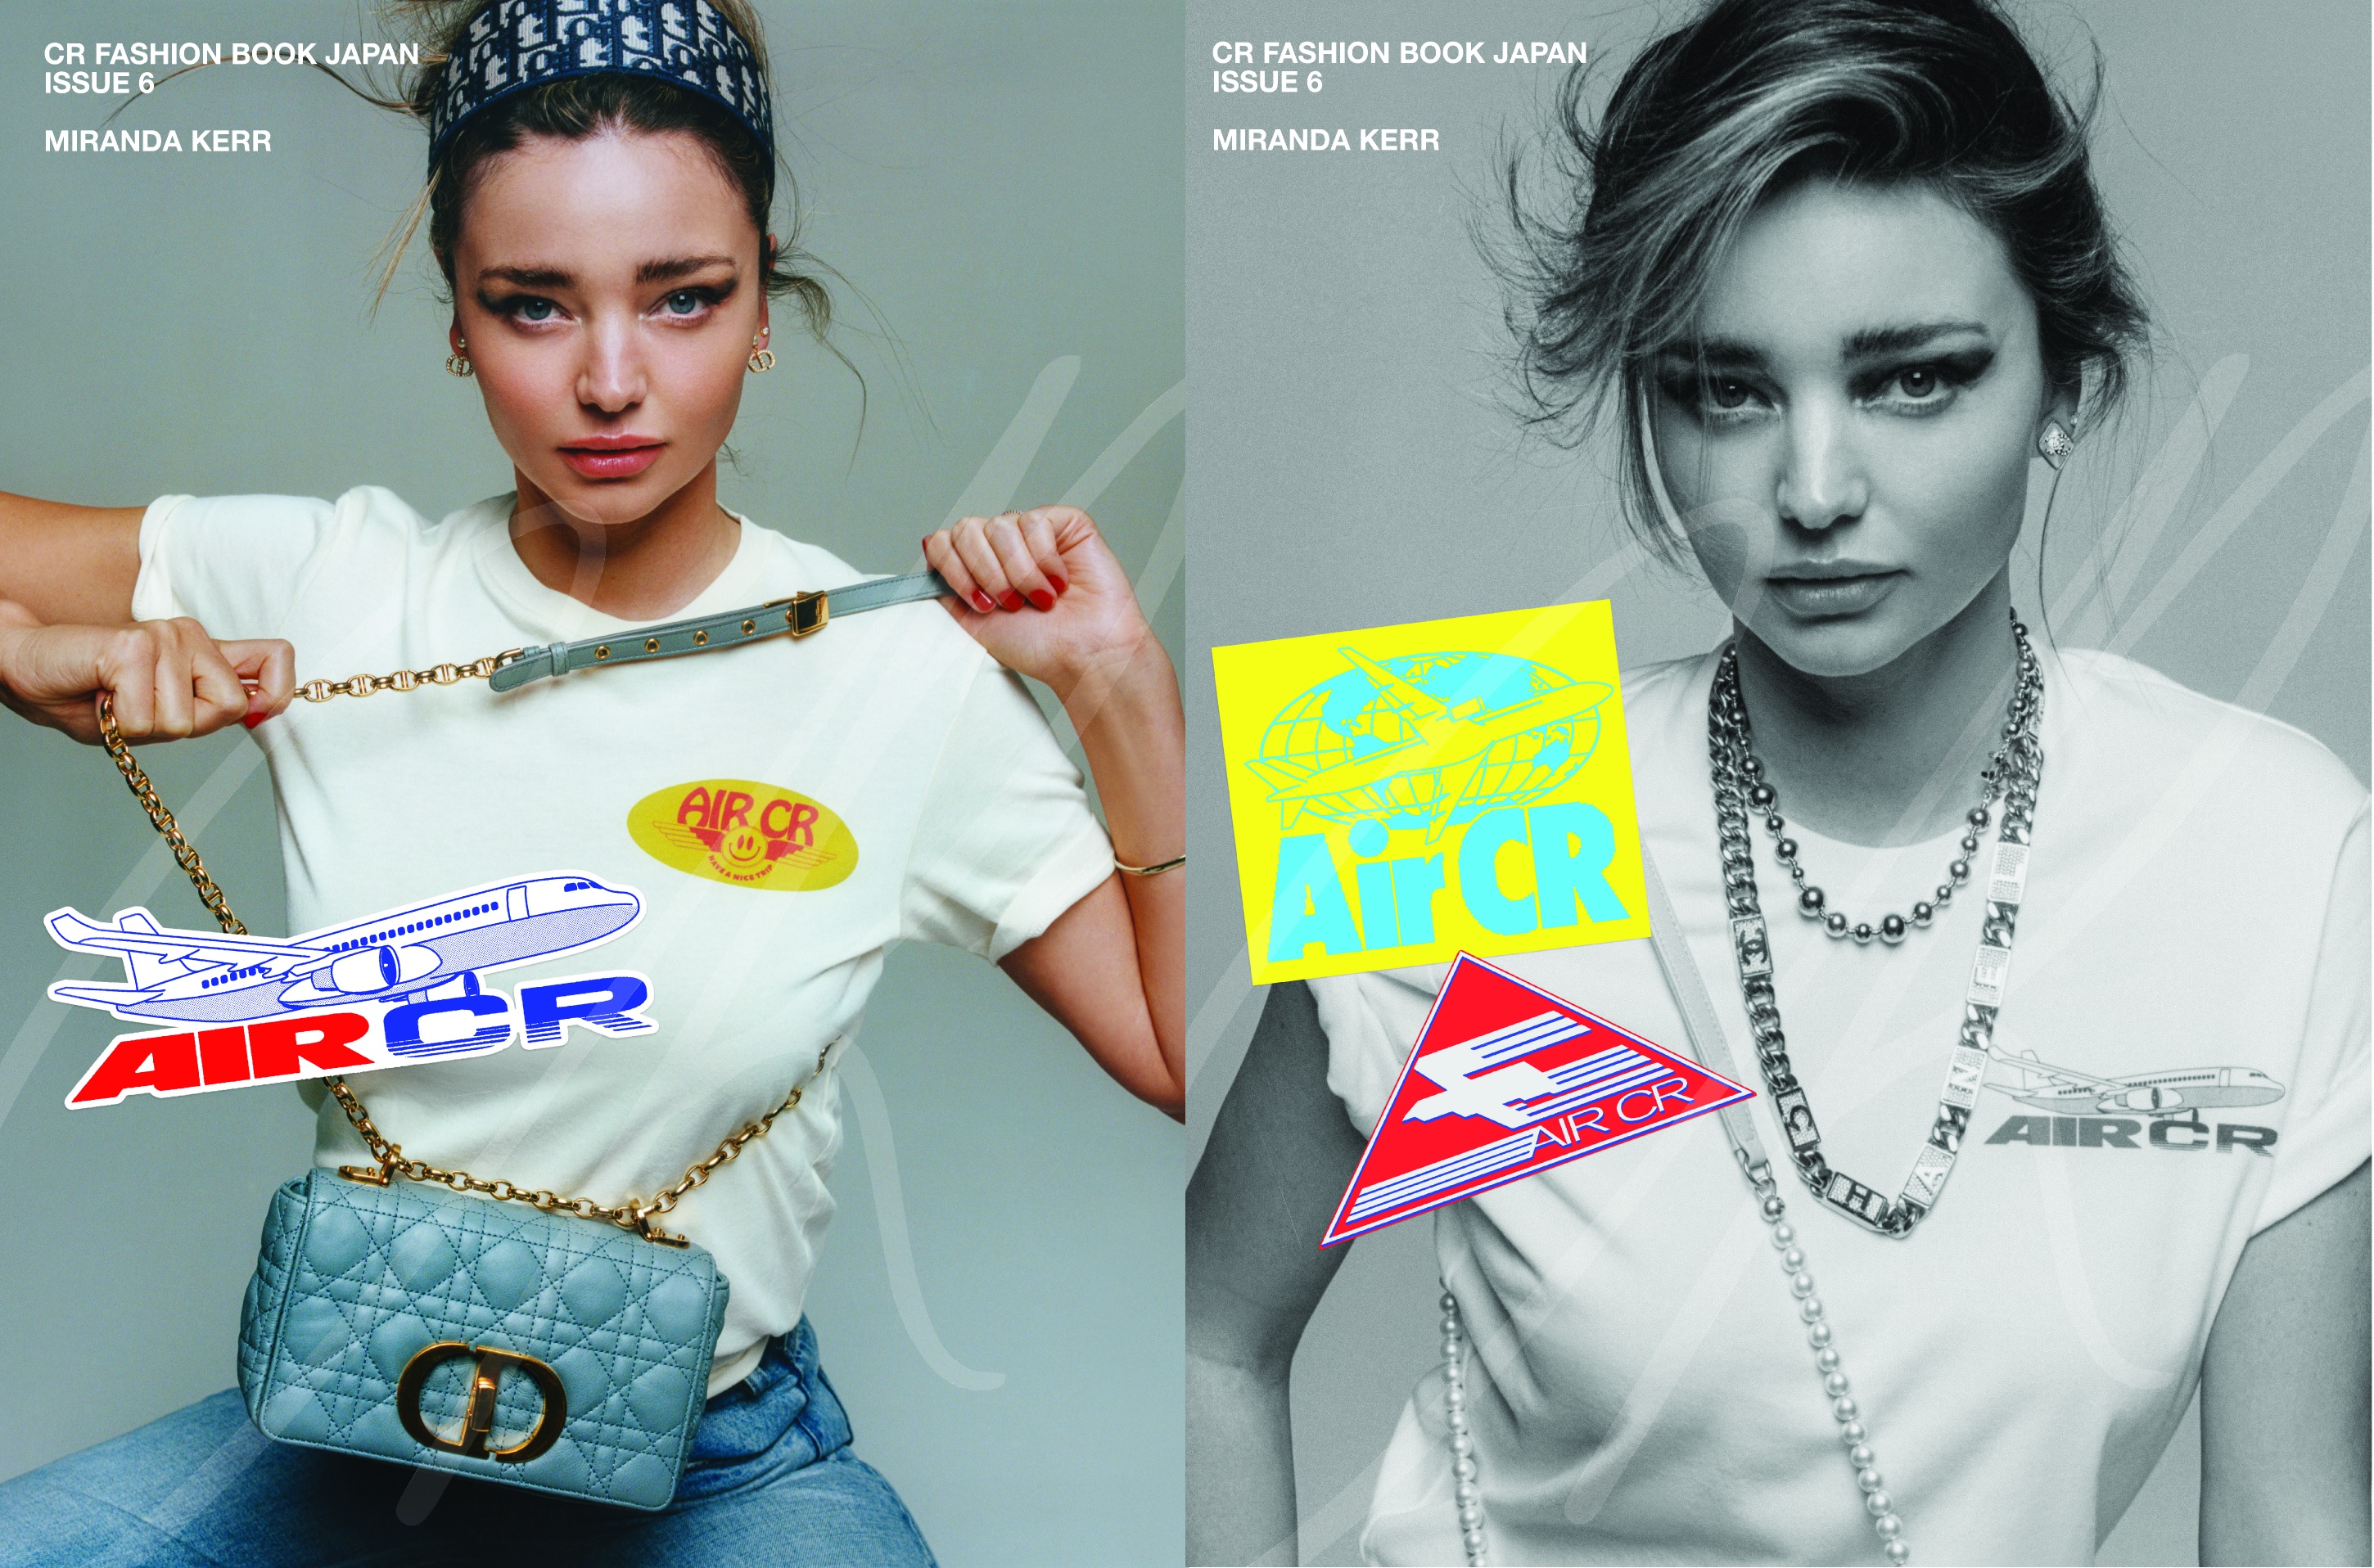 ミランダ カーが表紙を飾る Crファッションブック 日本版 第6号 4月13日発売 株式会社ハースト婦人画報社のプレスリリース